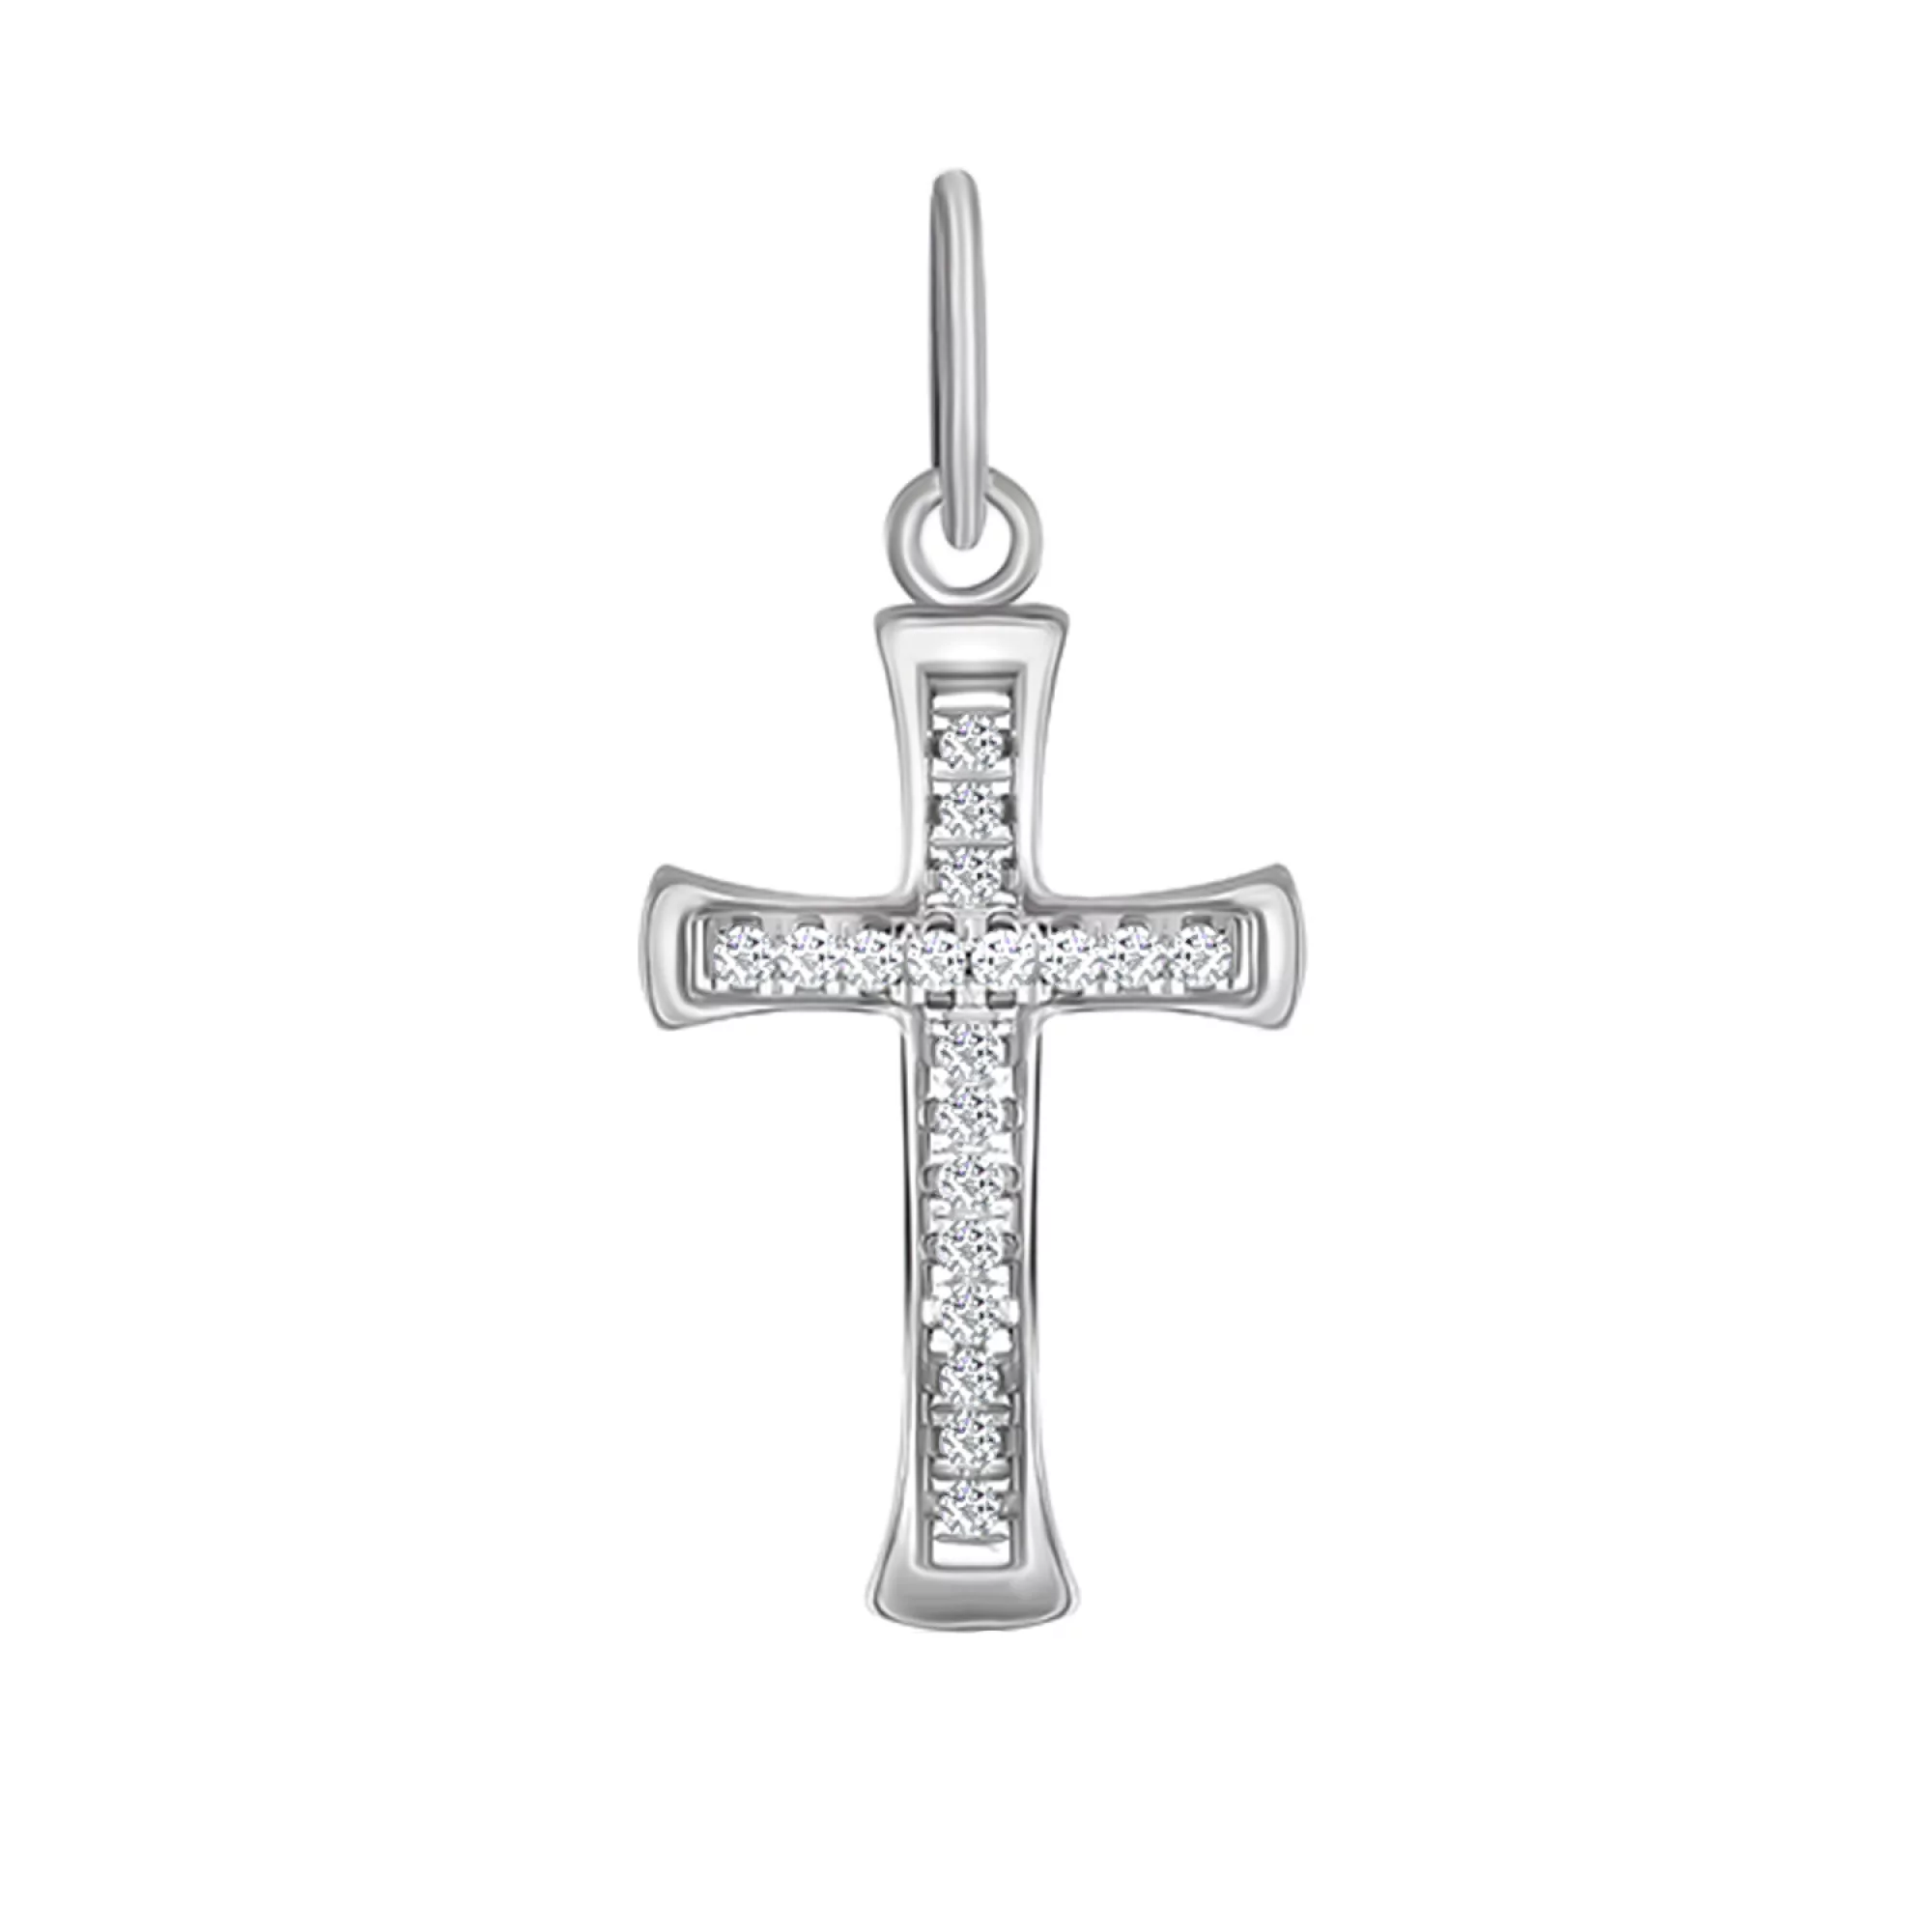 Крестик из серебра с дорожкой фианитов - 1575305 – изображение 1